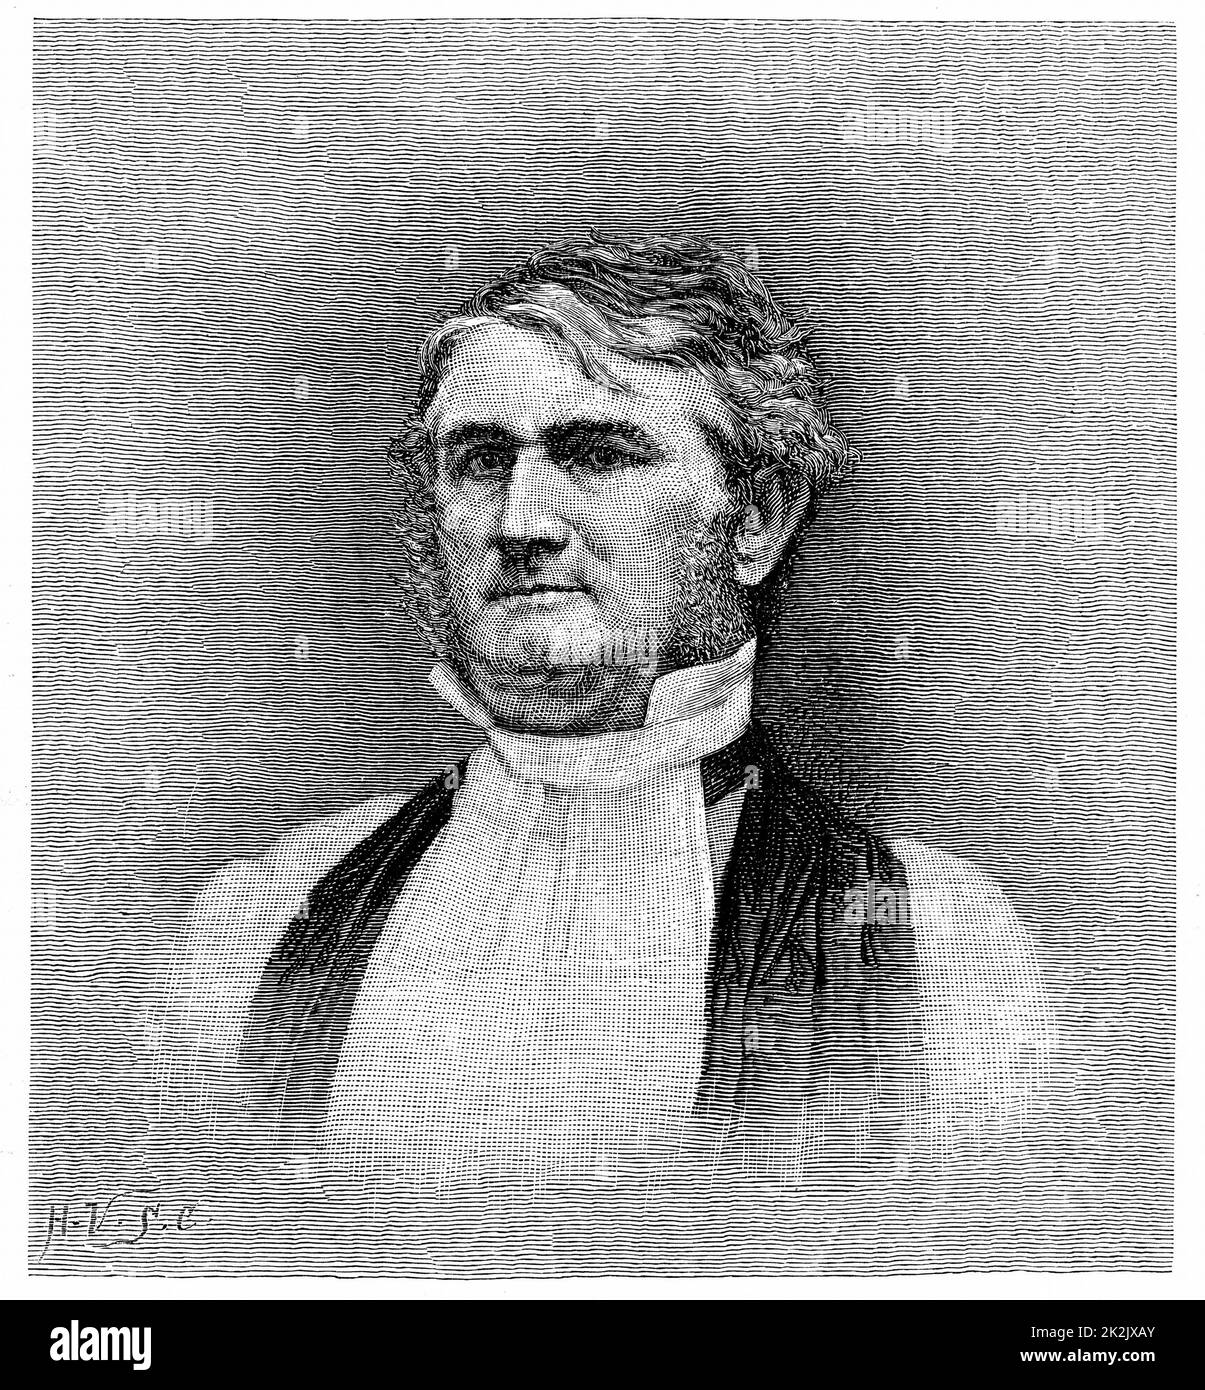 Leonidas Polk (1806-1864) religieux et soldat américains. Évêque d'Arkansas 1838, de Louisiane à partir de 1841. Corps de troupes confédérées commandé pendant la guerre de Sécession 1861-1865. Gravure Banque D'Images